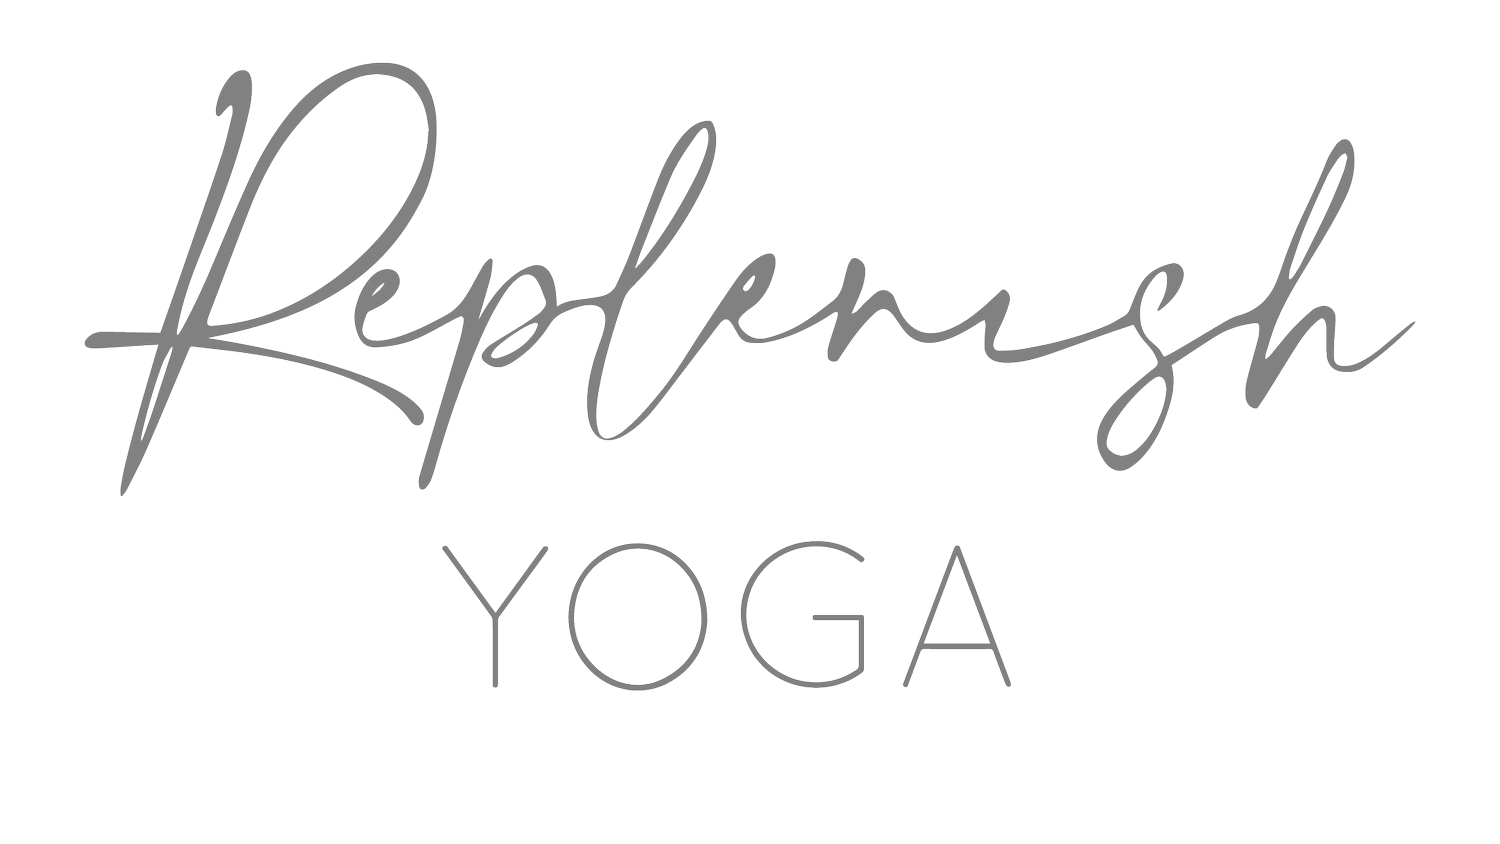 Replenish Yoga